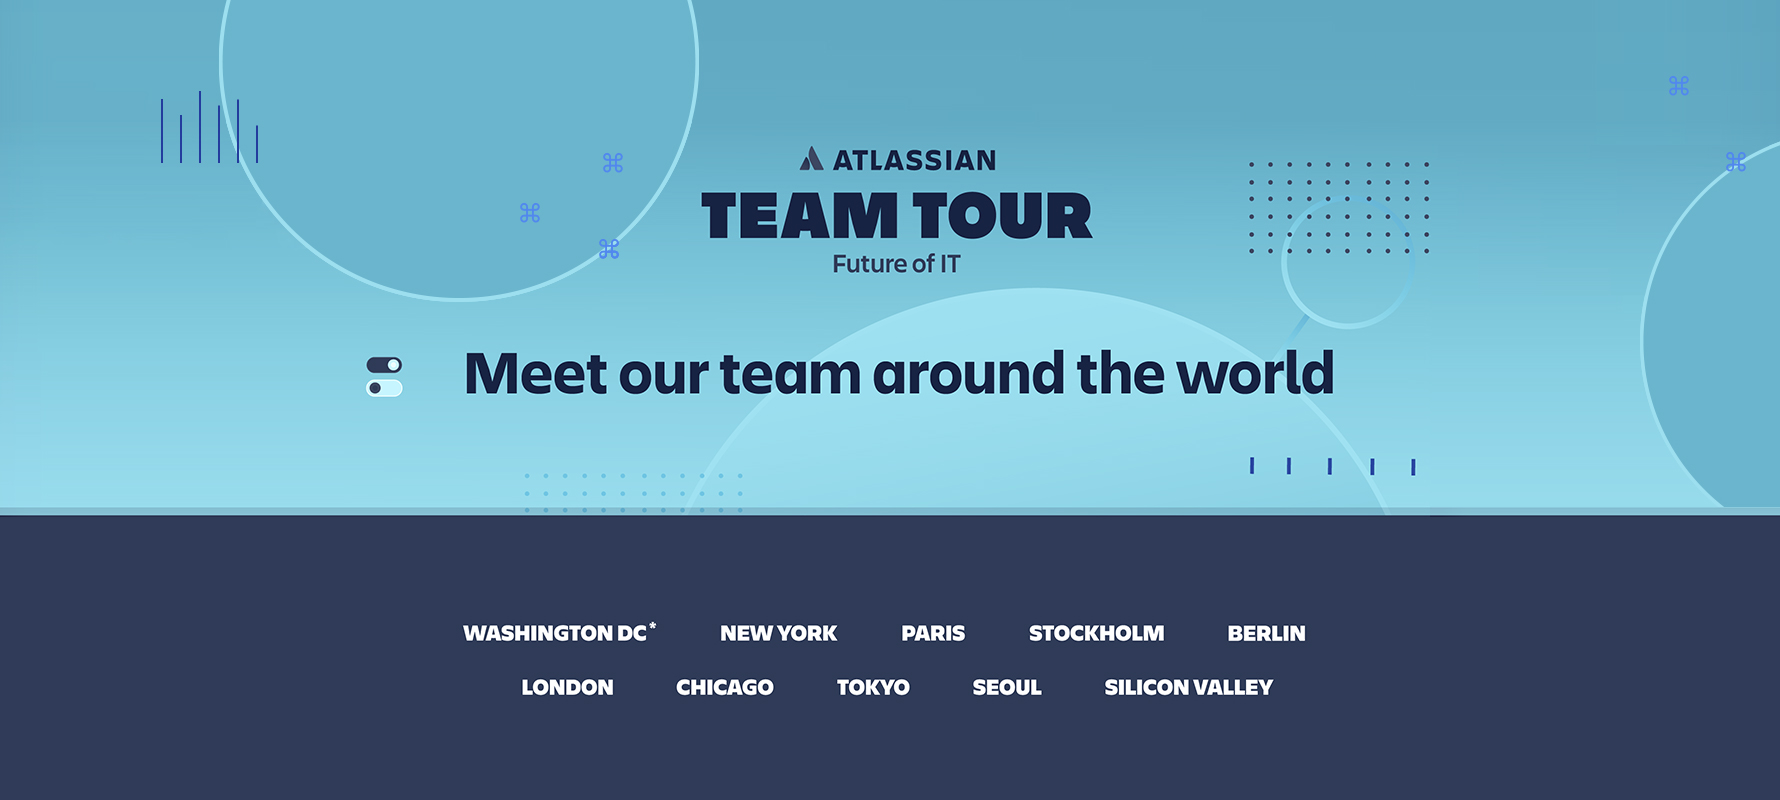 Werbebanner der globalen Atlassian Team Tour "The Future of IT"